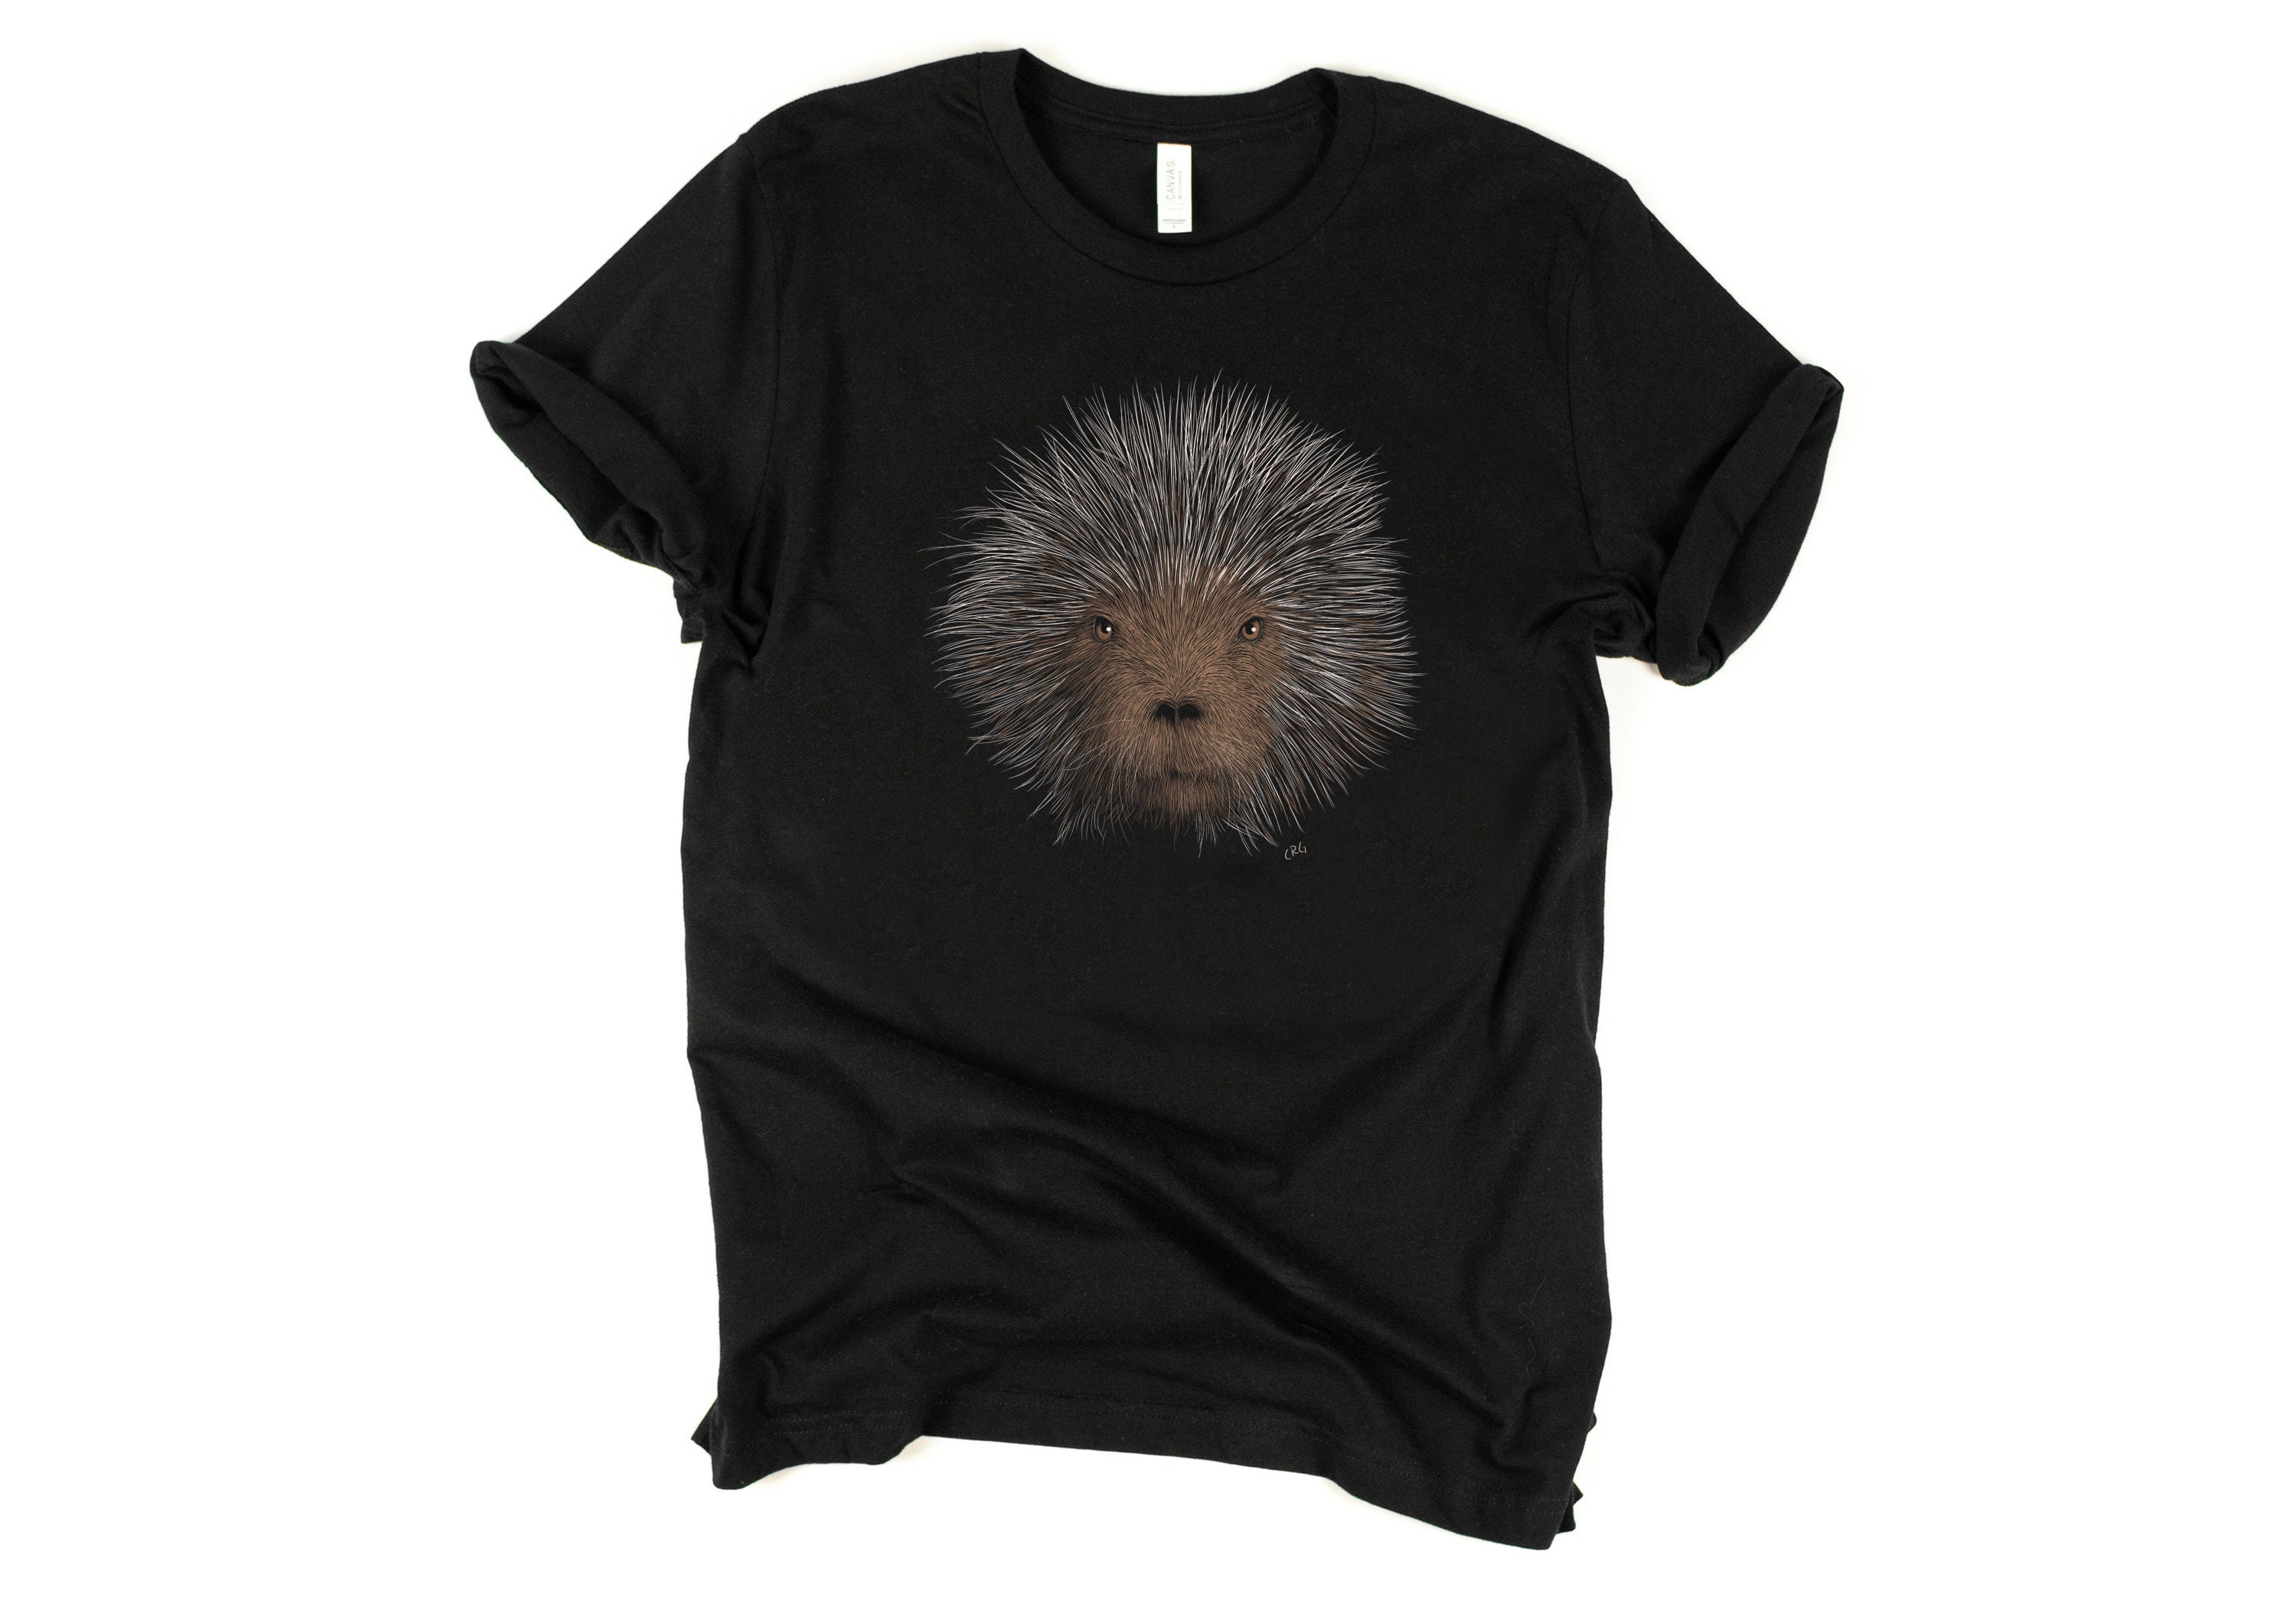 Porcupine Shirt / Porcupine / Porcupine Lover Gift / Porcupine | Etsy